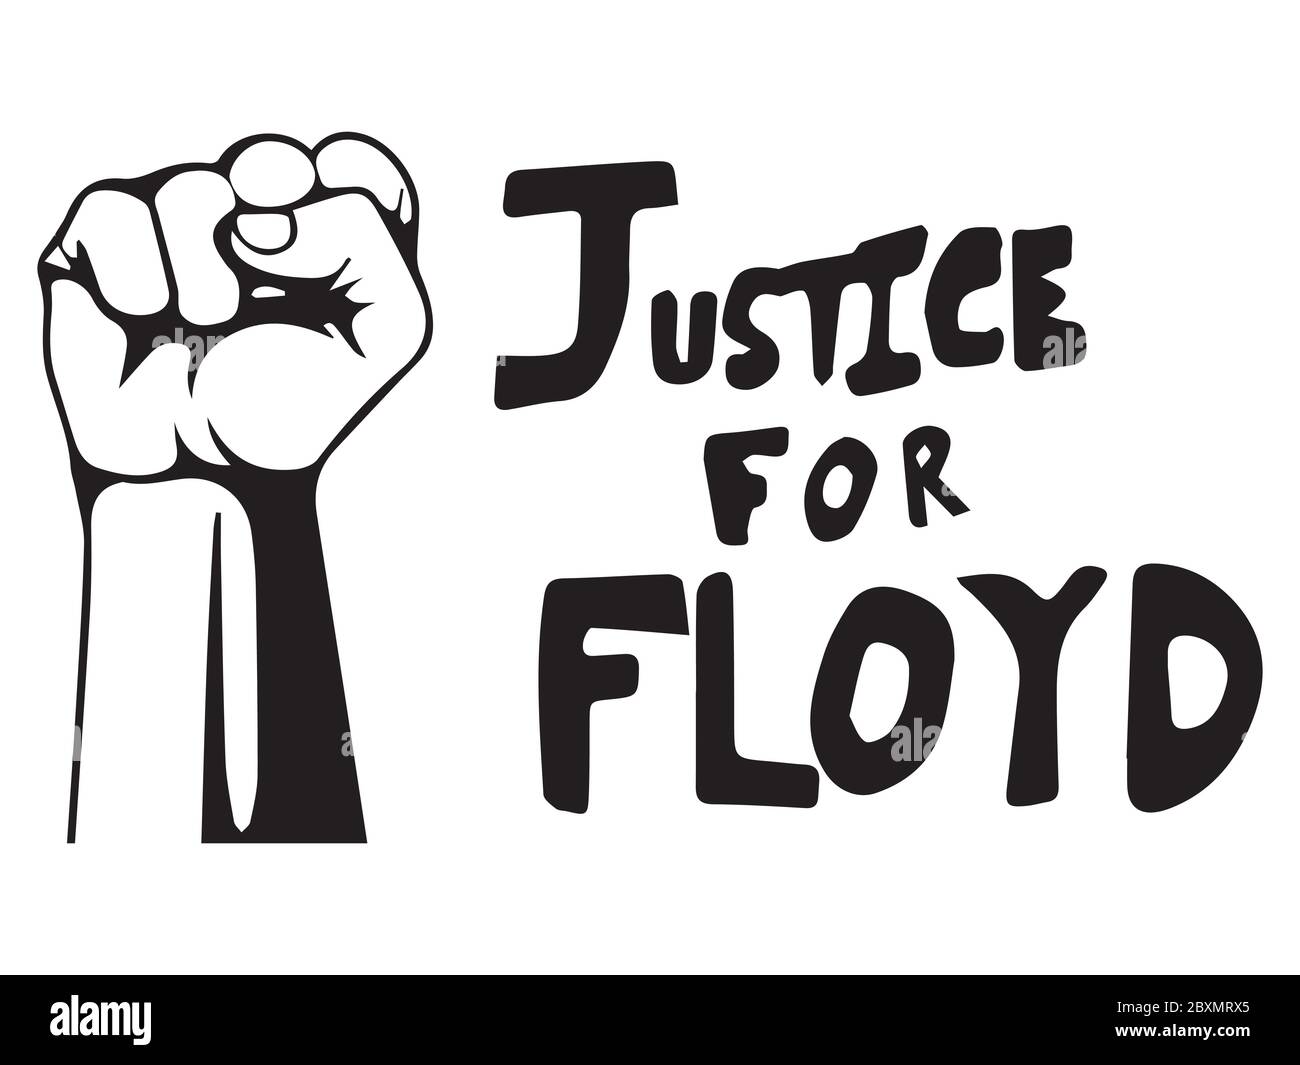 Gerechtigkeit für Floyd mit Faust. Piktogramm Illustration zur Darstellung von Gerechtigkeit für Floyd Text mit BLM Fist Logo. Schwarz-weiße EPS-Vektordatei. Stock Vektor